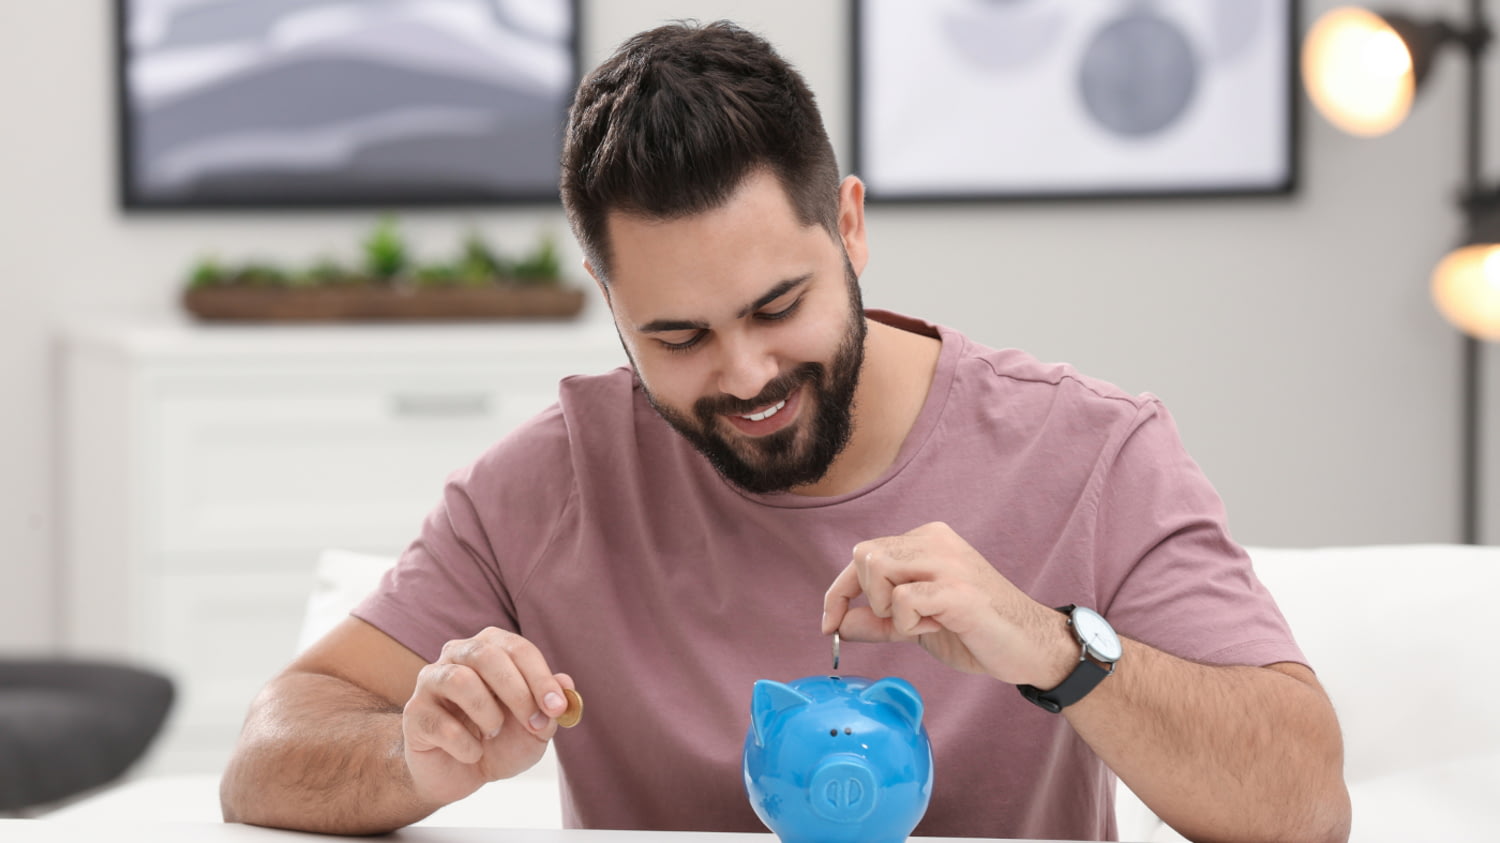 Ein Mann mit Bart sitzt am Tisch und blickt lächelnd auf ein blaues Sparschwein, in das er eine Münze steckt